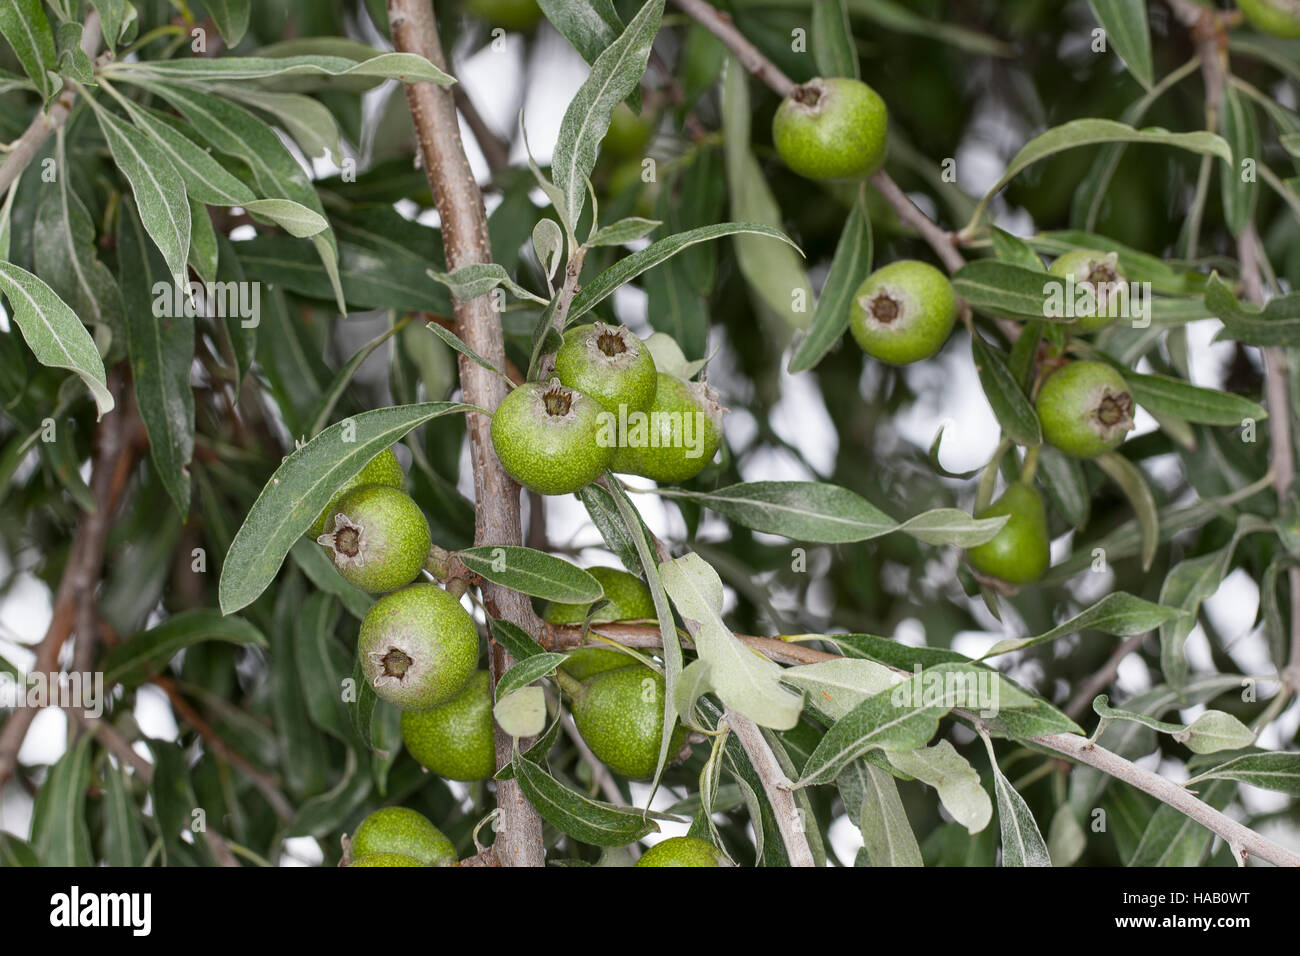 Weidenblättrige Birne, Weiden-Birne, Pyrus salicifolia, Willow-leaved Pear, Willow leaved Pear, Willowleaf Pear, Weeping Pear Stock Photo